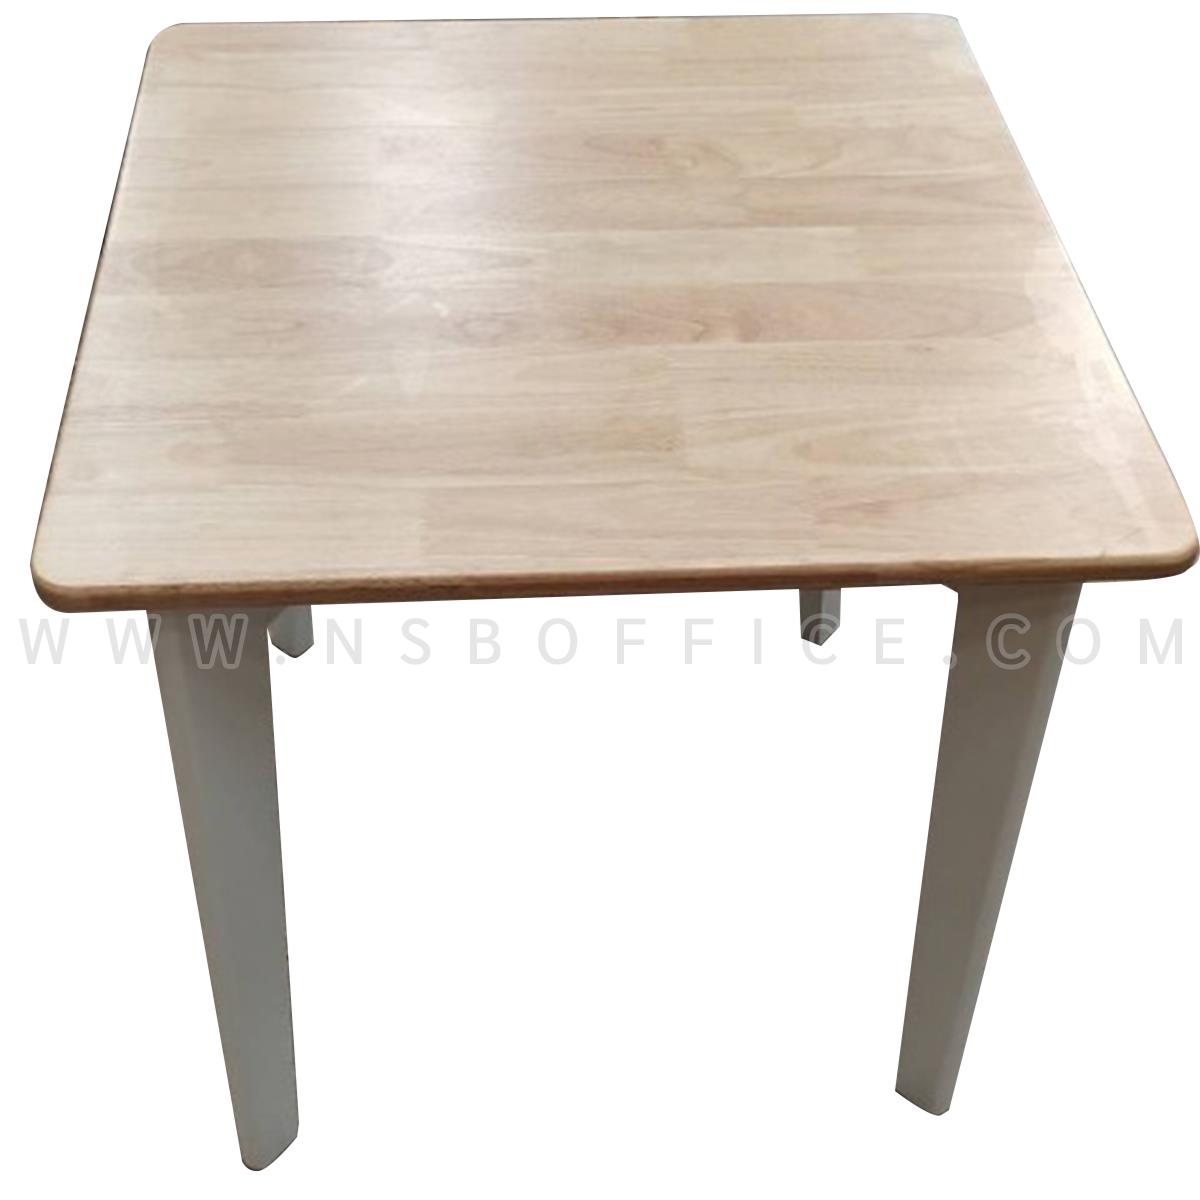 โต๊ะไม้ยางพารา รุ่น Mina (มินะ) ขนาด 70W*70D cm. 